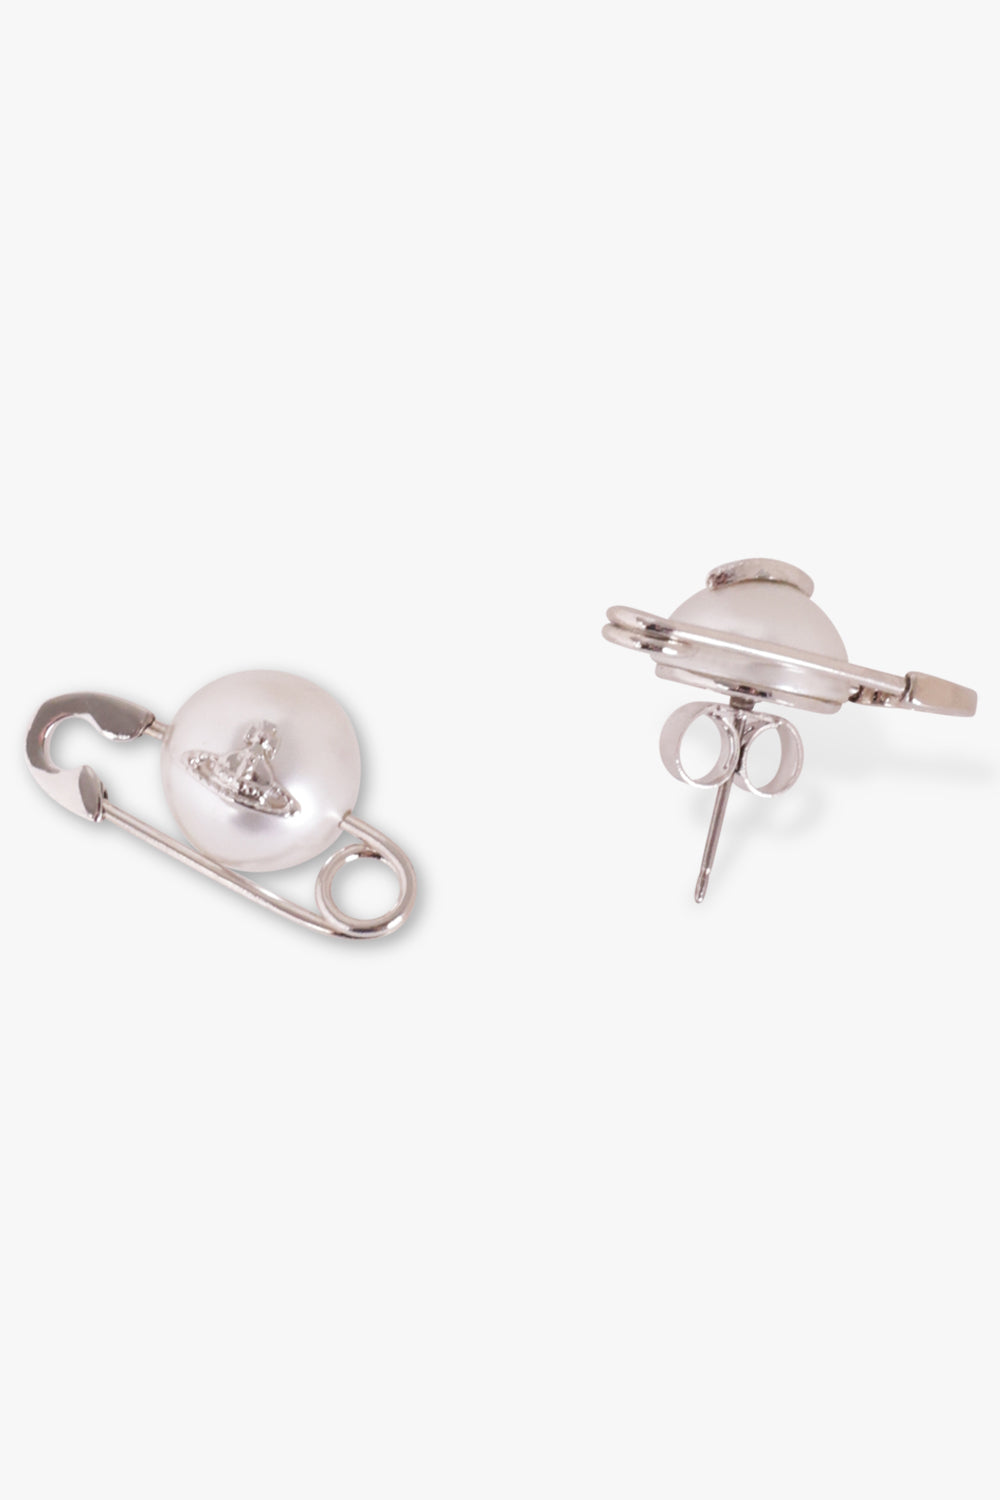 VIVIENNE WESTWOOD ACCESSORIES Silver Jordan Earrings | Silver/Pearl